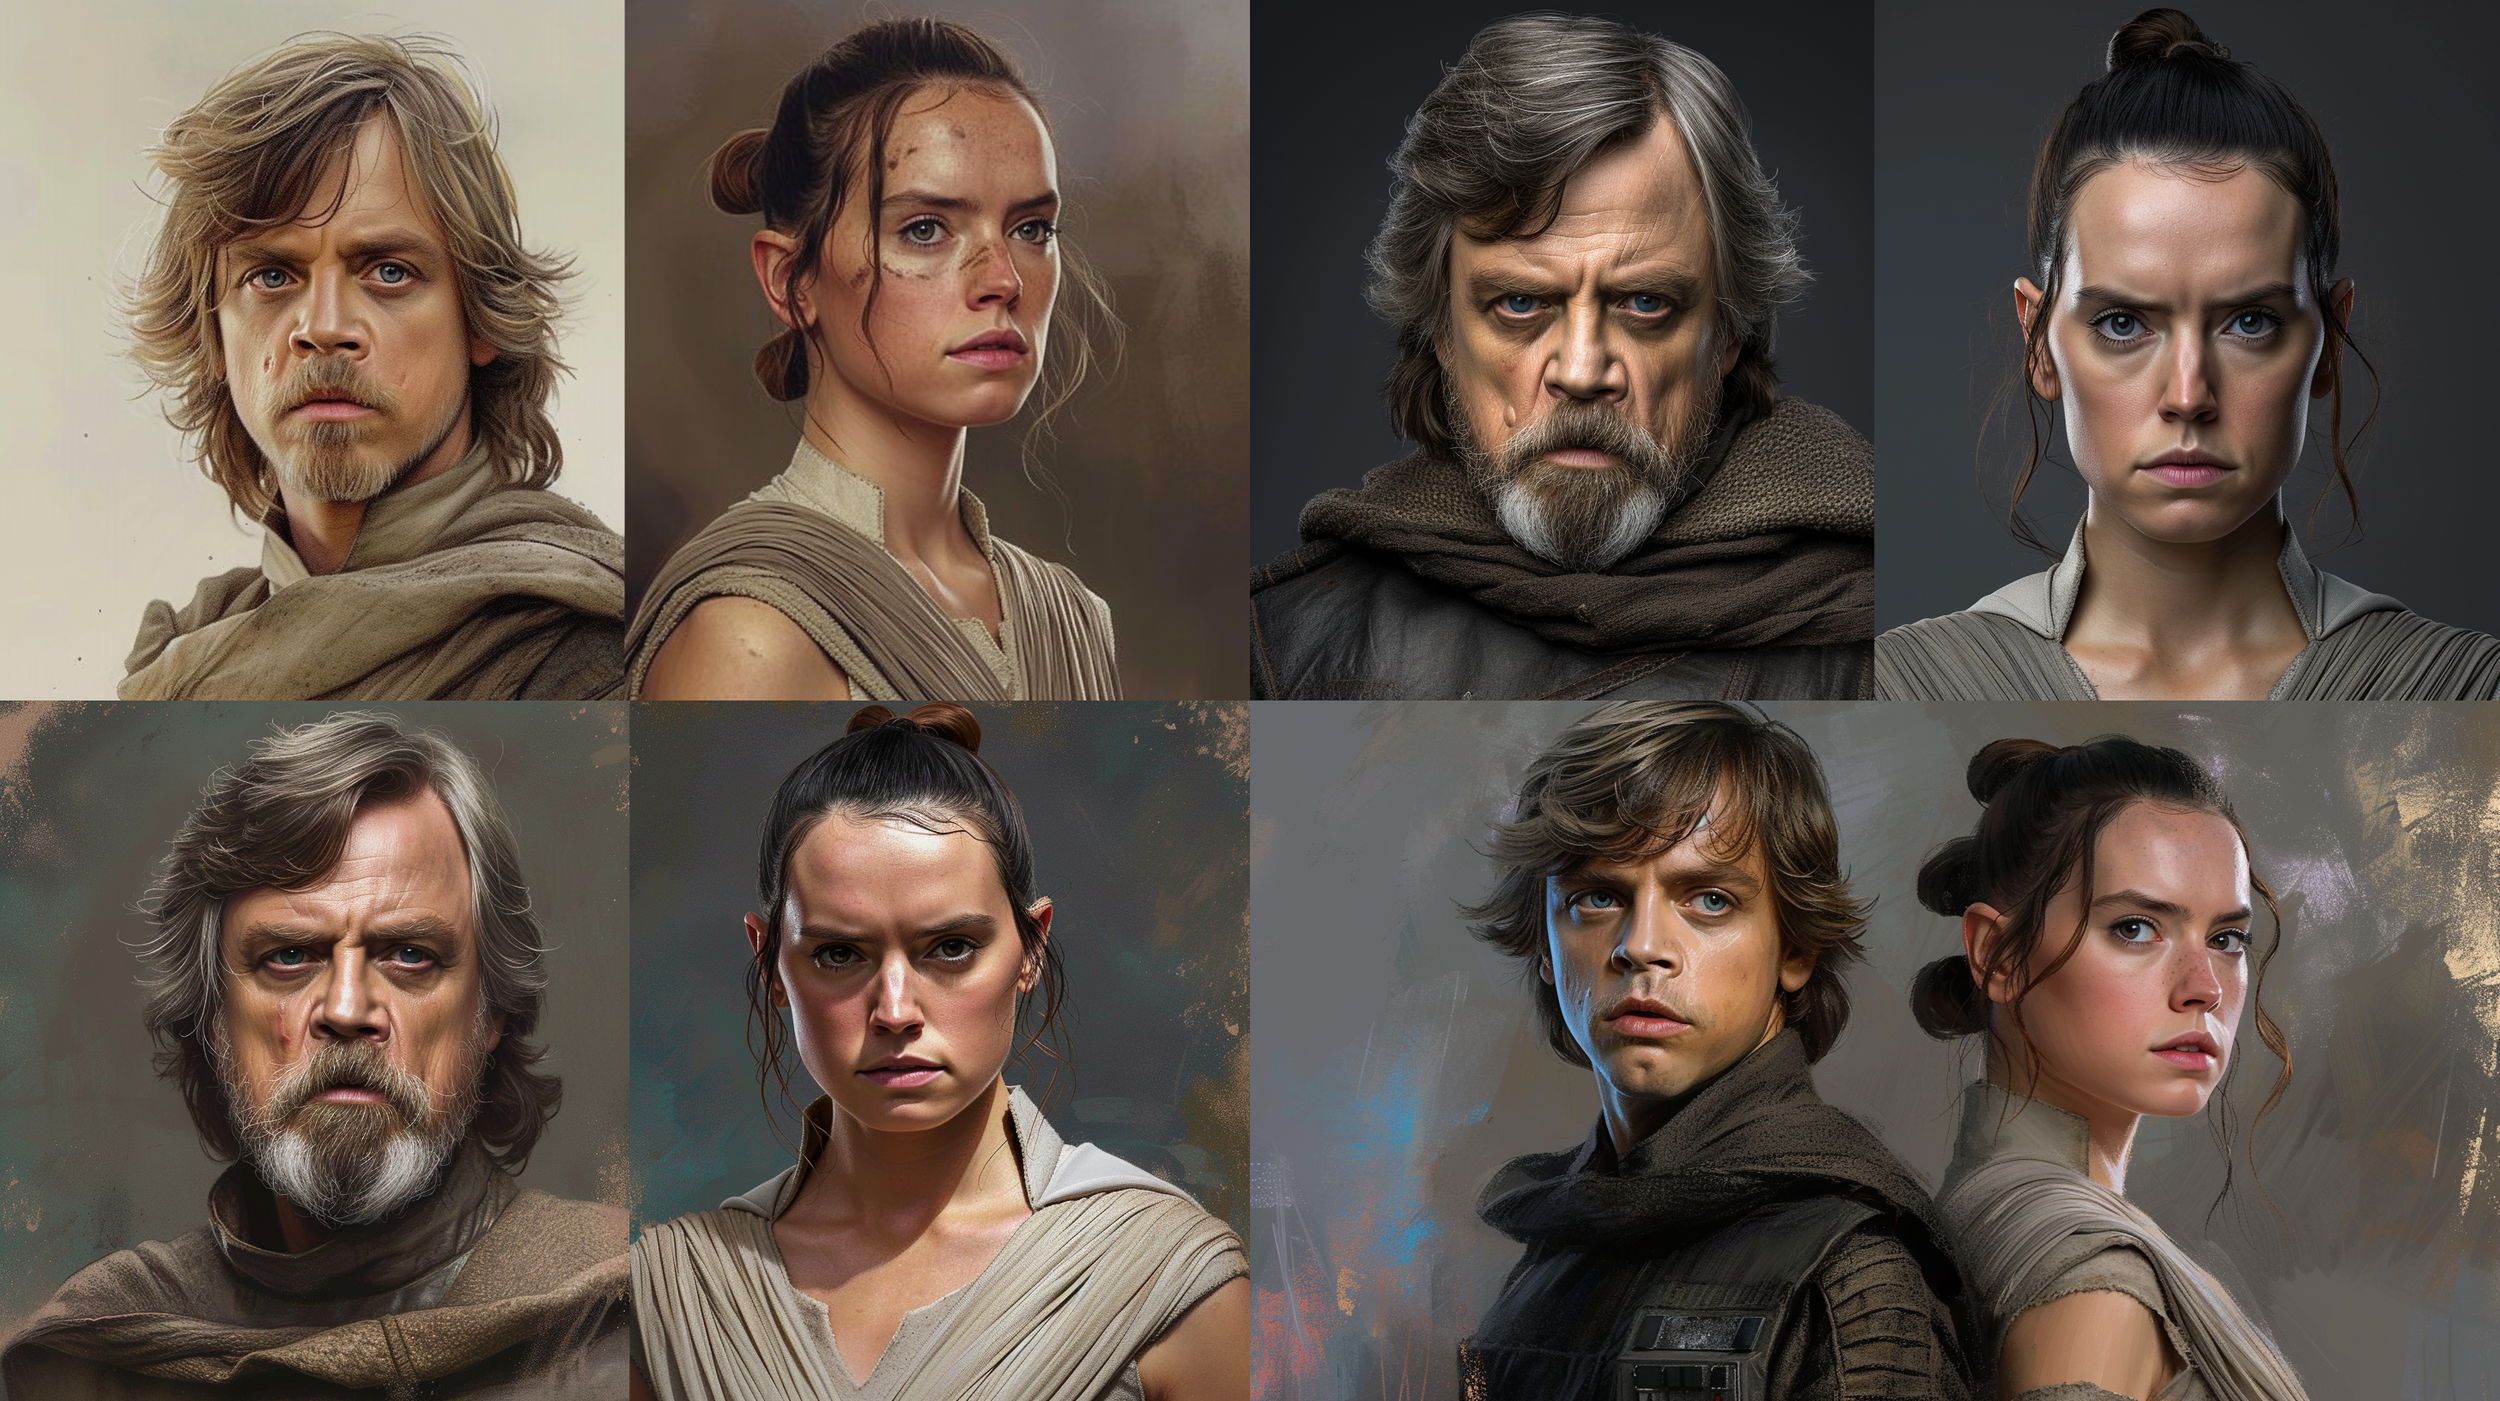 A Star Wars szereplők jellemfejlődése az évek során